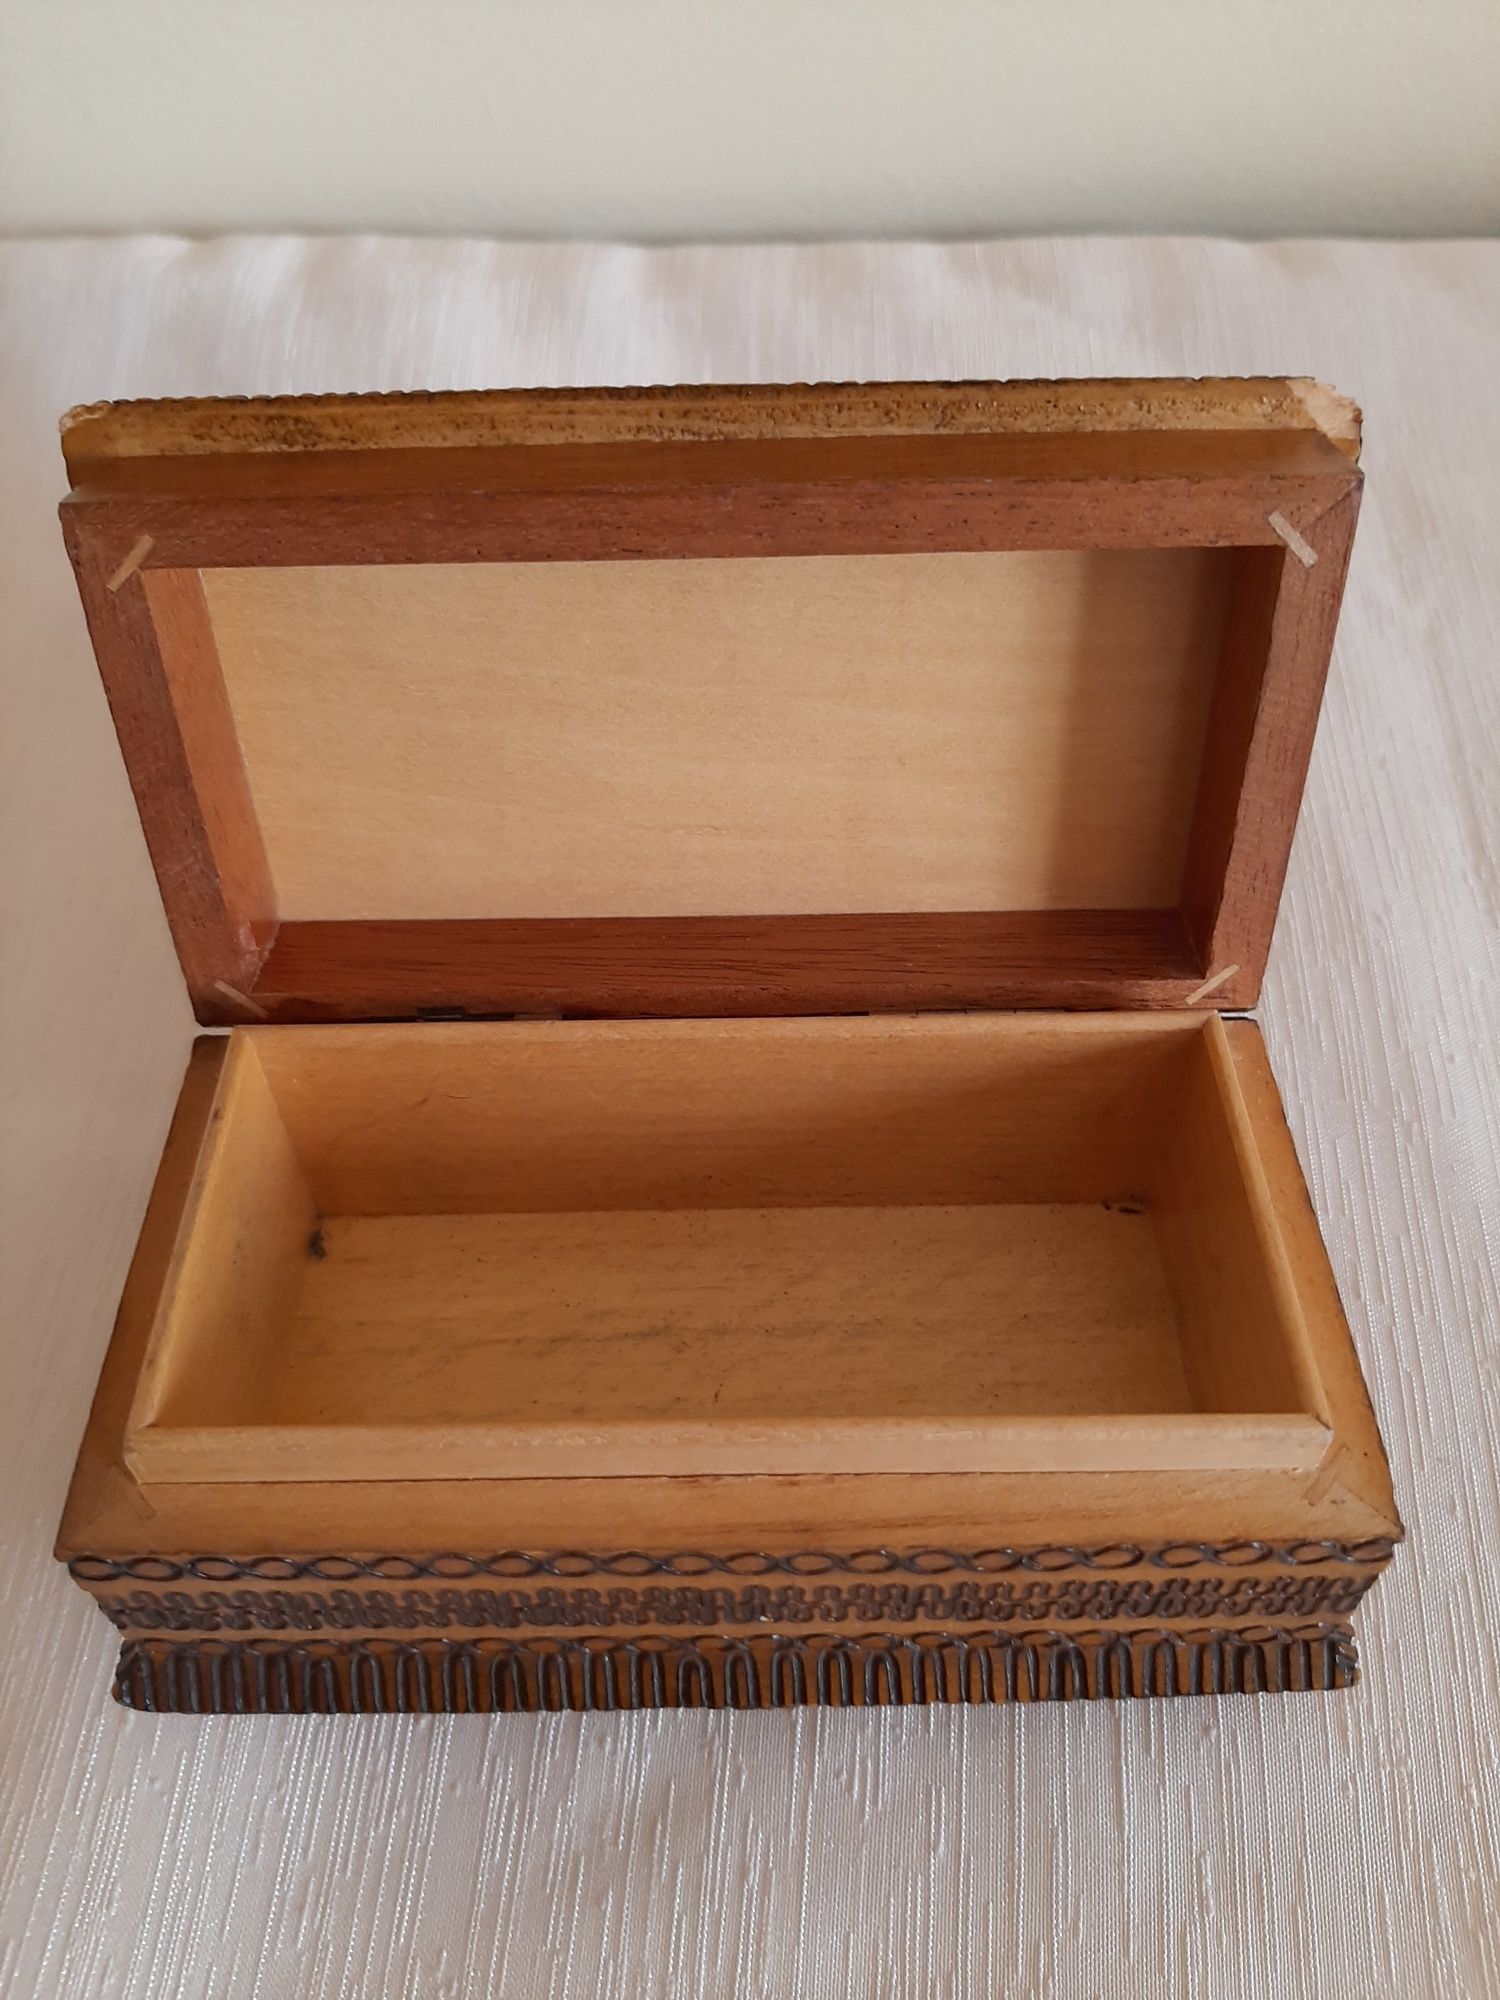 Kasetka szkatułka drewniana Zakopane pamiątka z Prl lata 6o-te